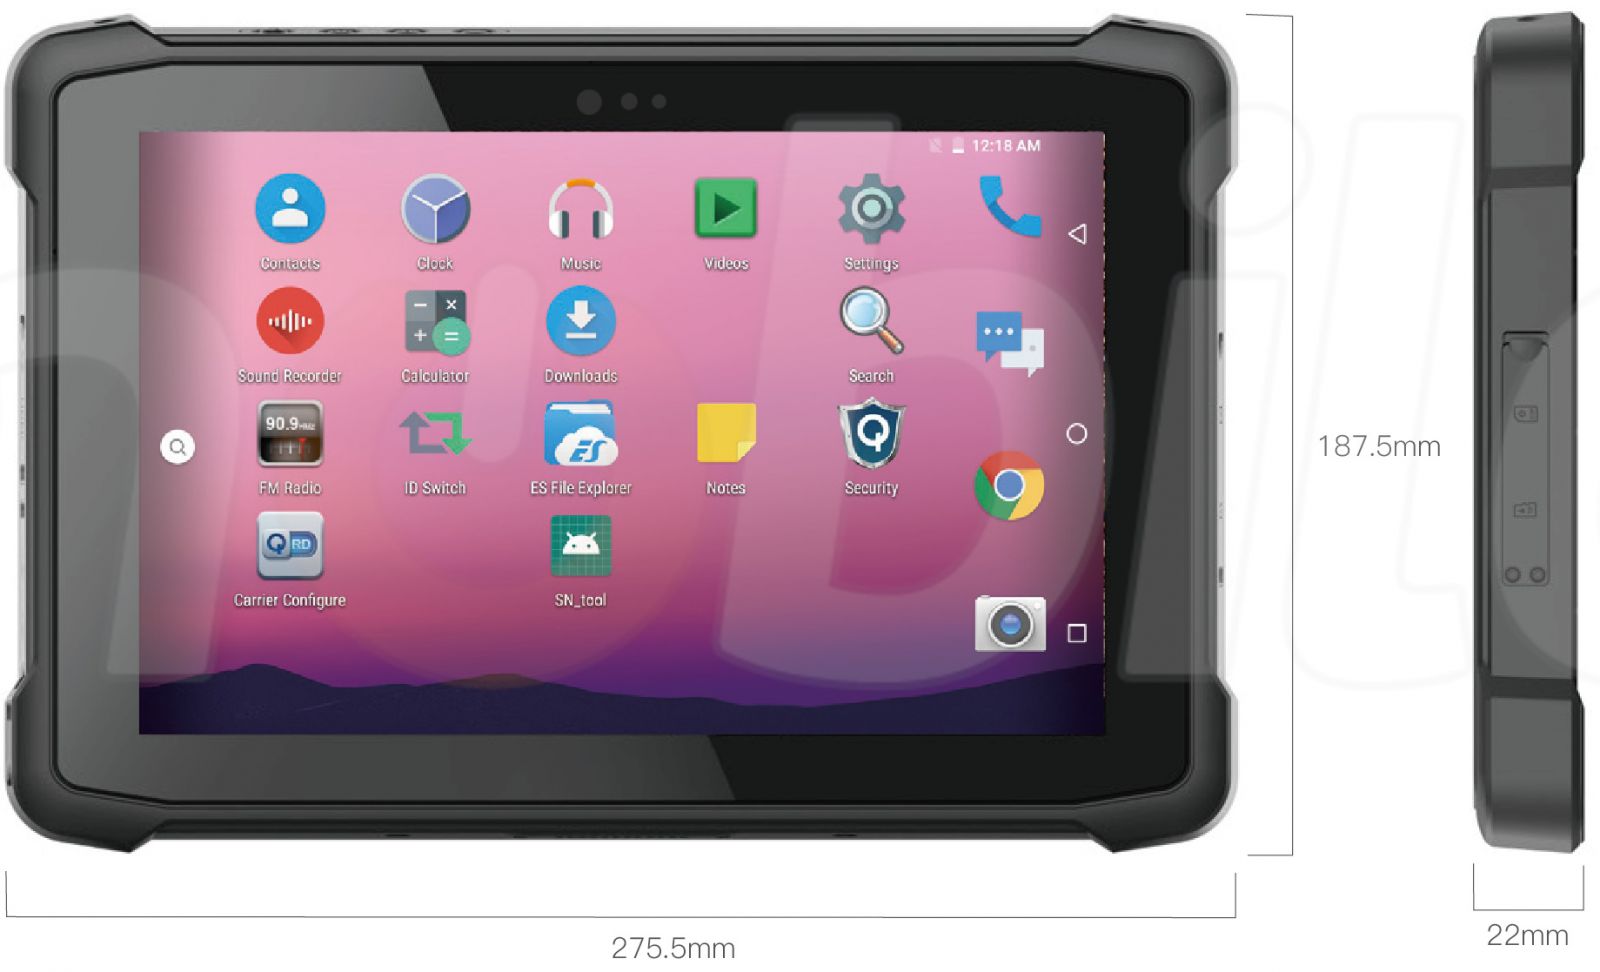 Emdoor Q11 v.3 - Odporny na upadki dziesiciocalowy tablet z Bluetooth 4.1, 4GB RAM pamici, dyskiem 64GB, czytnikiem kodw 2D N3680 Honeywell, NFC  i 4G 